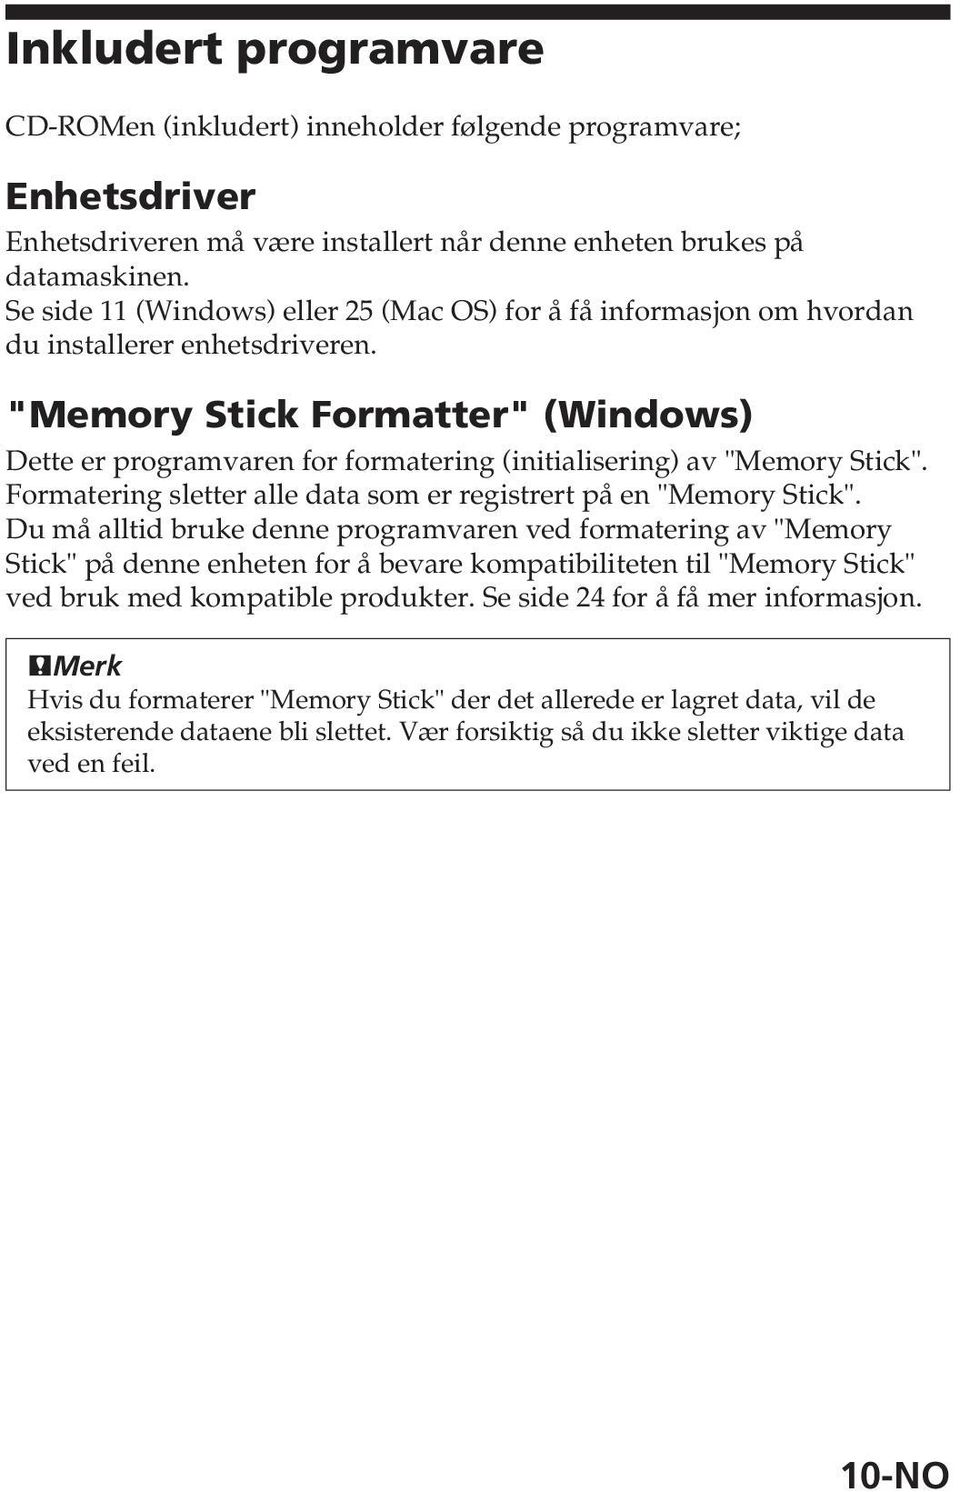 "Memory Stick Formatter" (Windows) Dette er programvaren for formatering (initialisering) av "Memory Stick". Formatering sletter alle data som er registrert på en "Memory Stick".